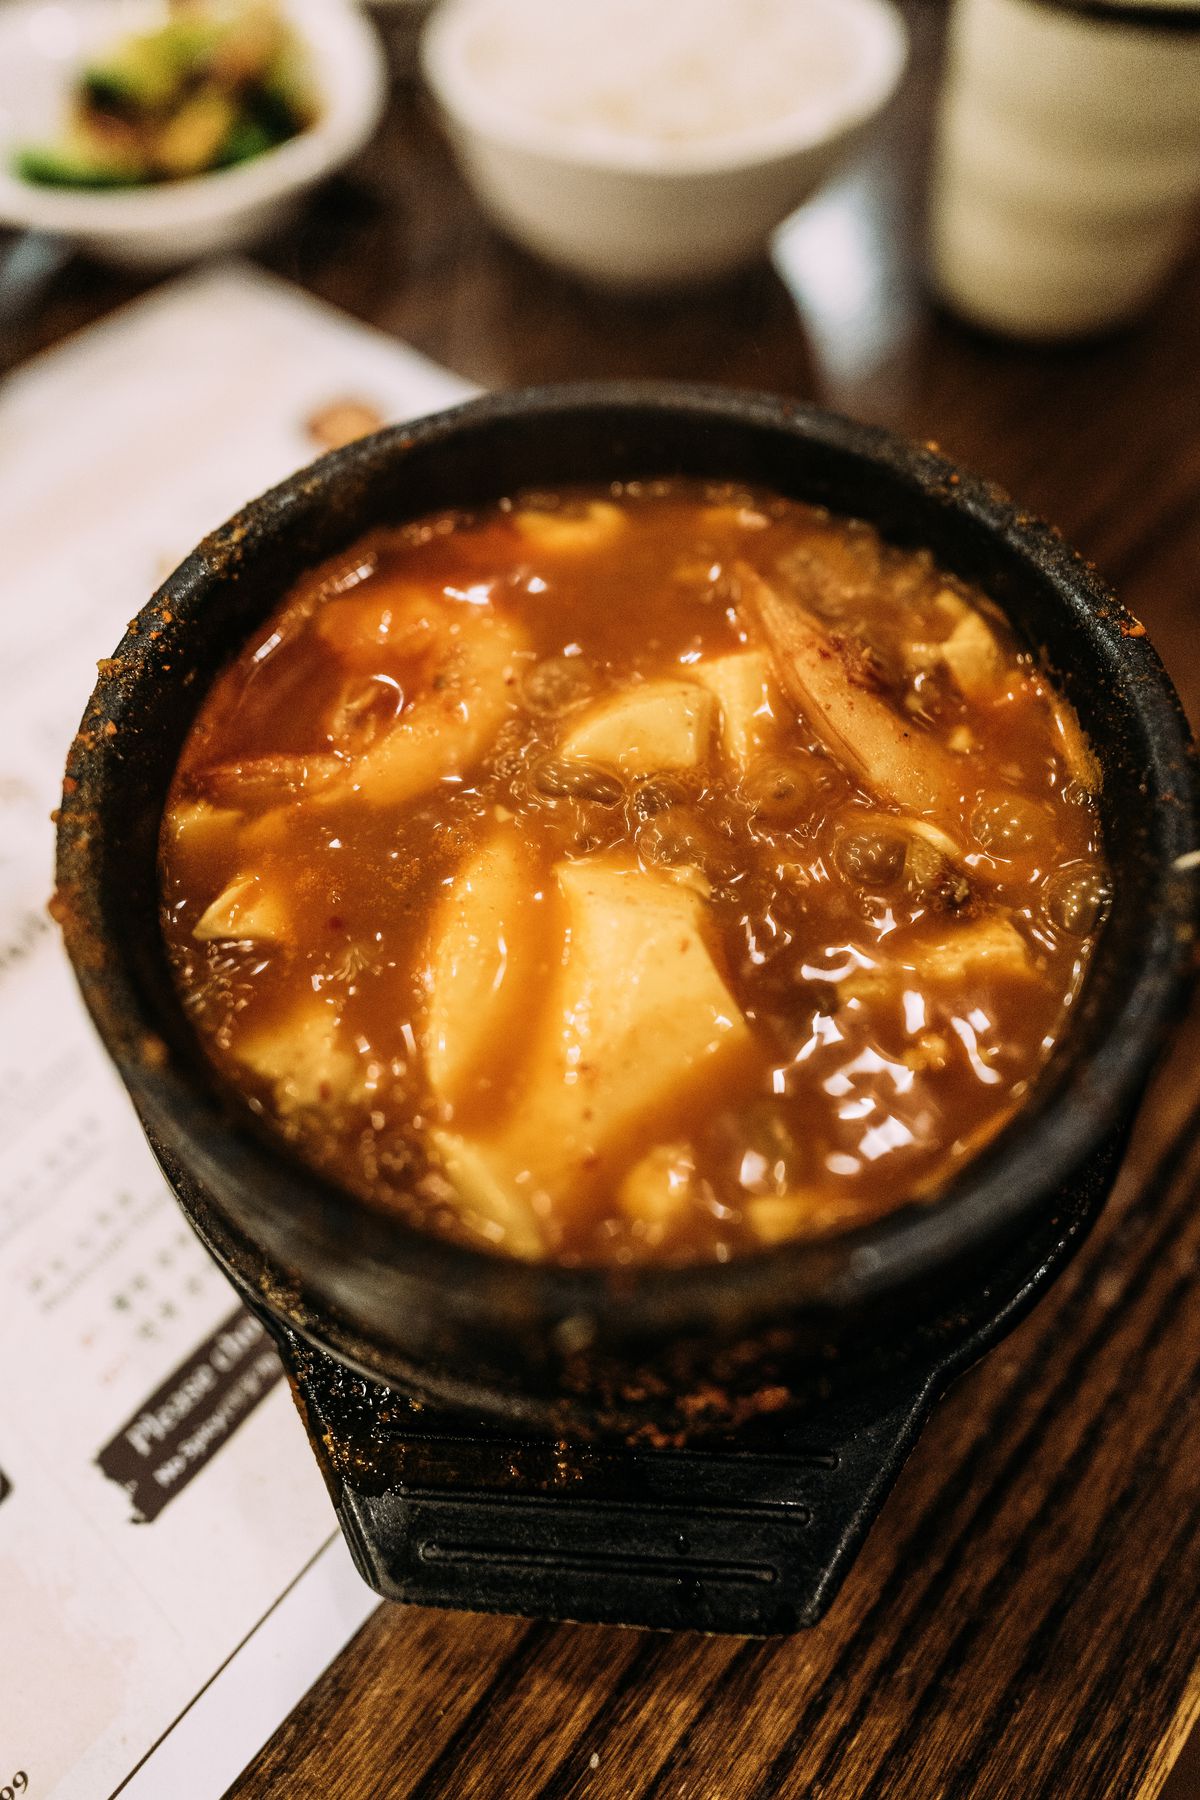 A close photo of a small bowl of soft tofu jjigae Korean stew.